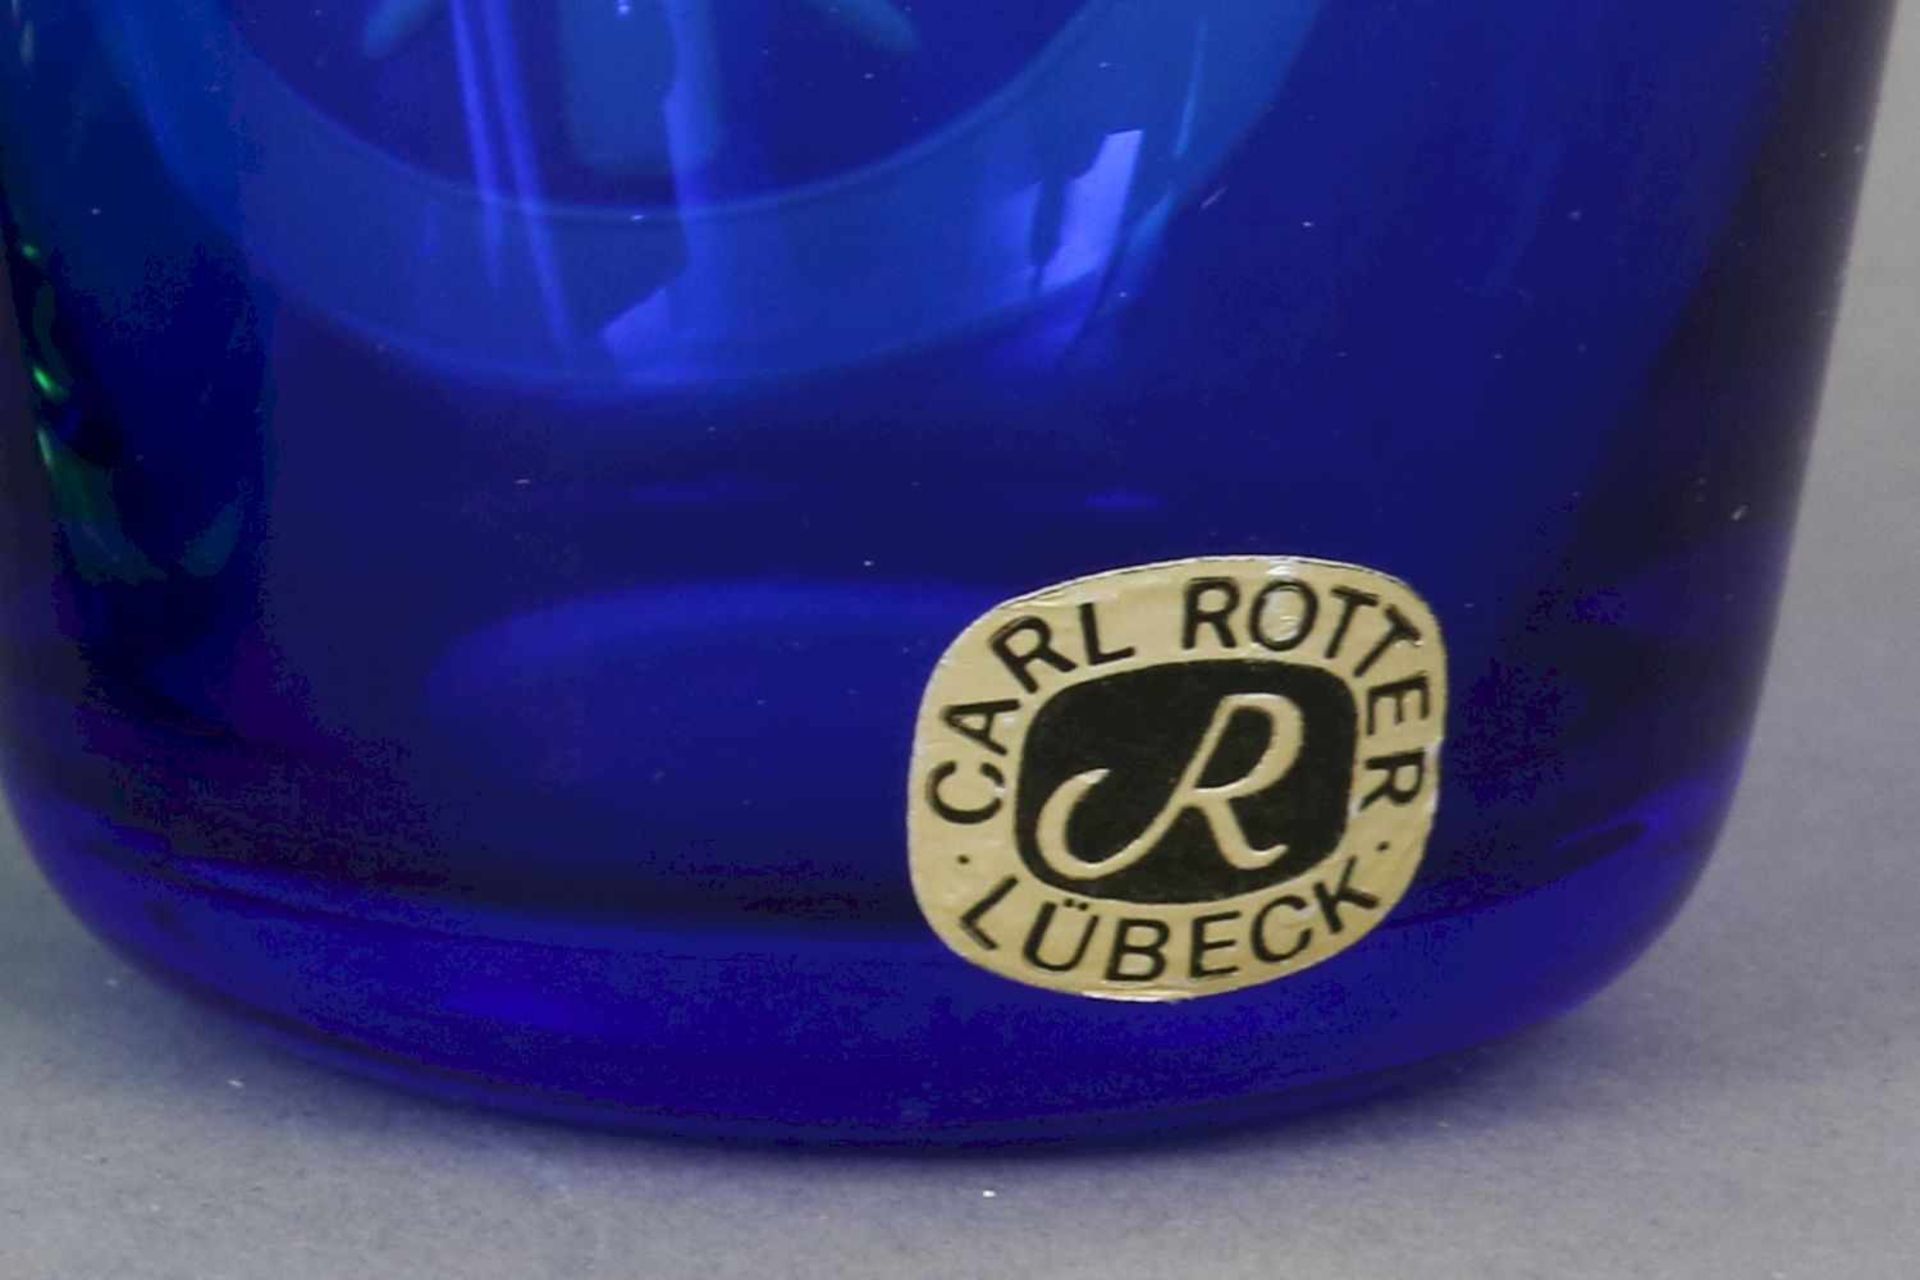 2 CARL ROTTER (Lübeck) Gläser1 blaues und 1 grünes Trinkglas mit geschliffenem Freimaurer-Dekor ¨ - Bild 4 aus 4